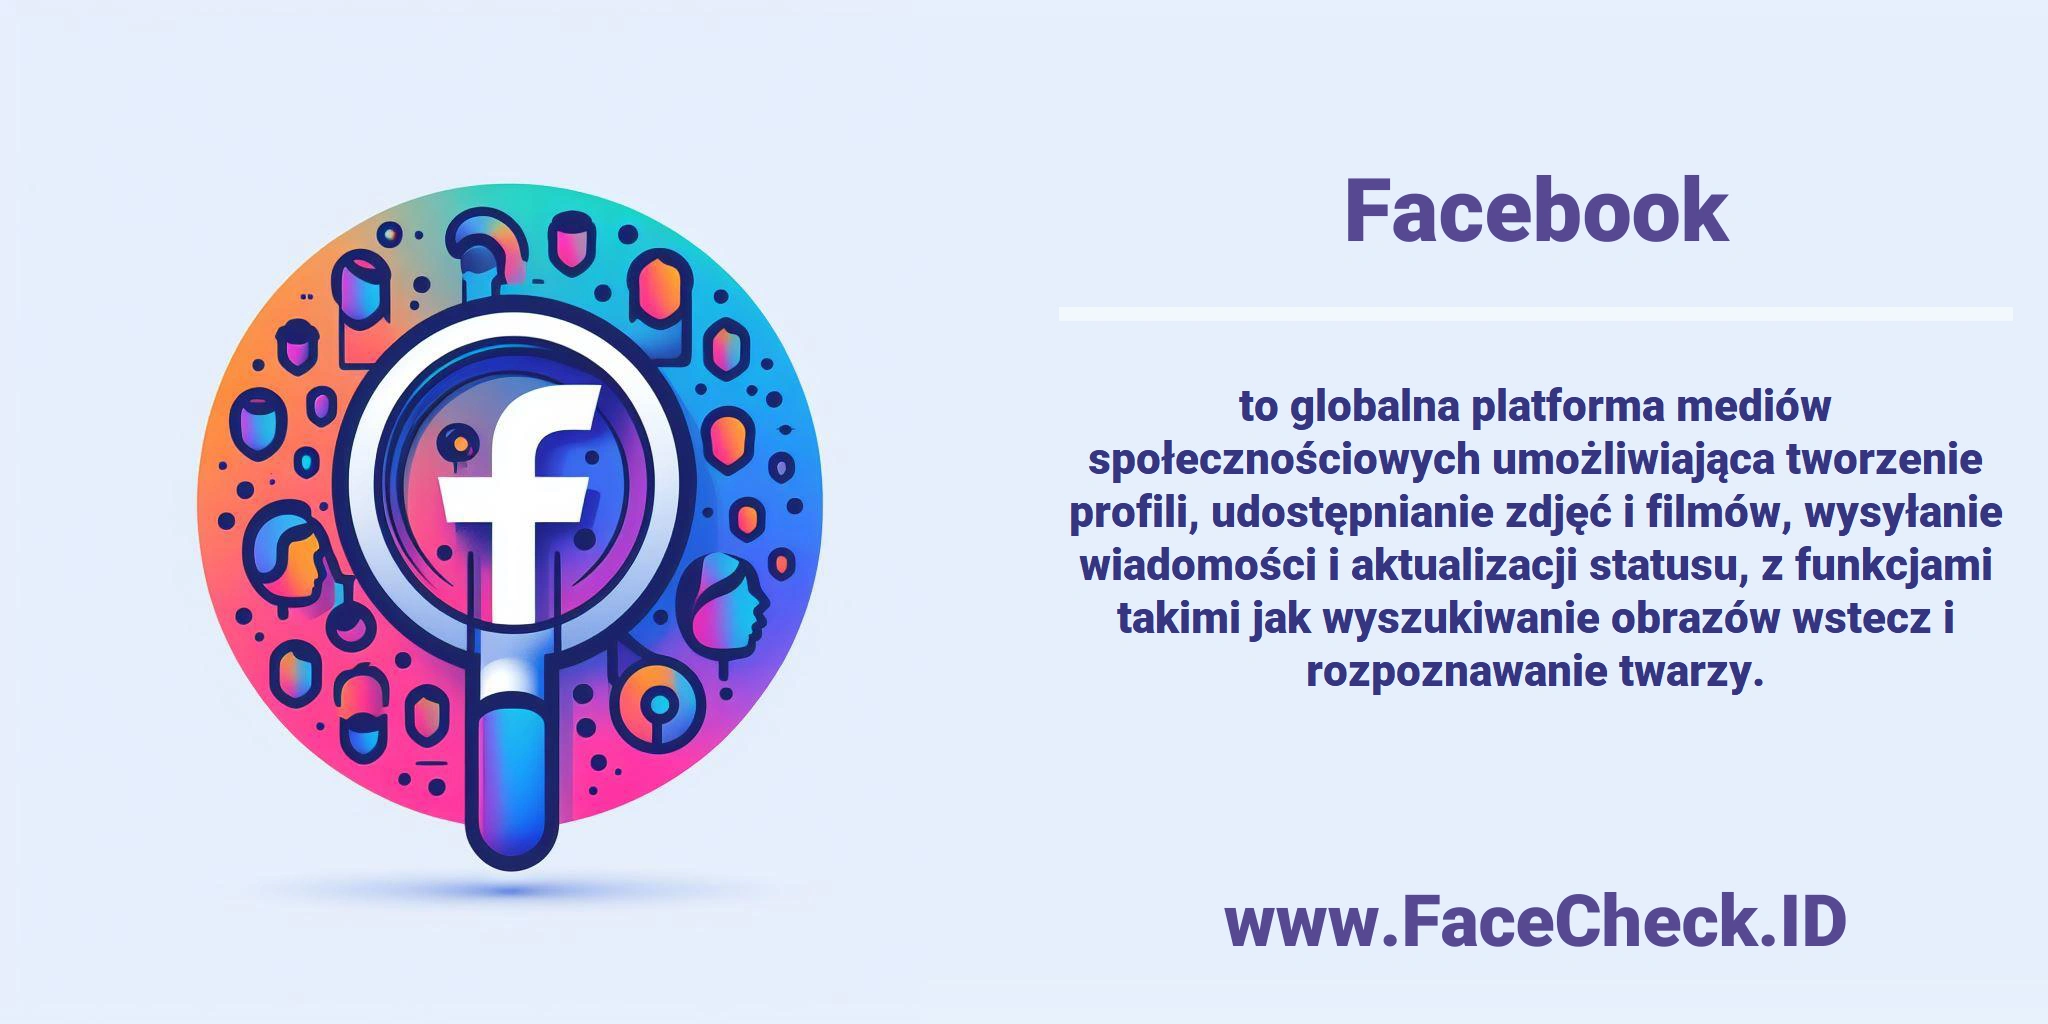 <b>Facebook</b> to globalna platforma mediów społecznościowych umożliwiająca tworzenie profili, udostępnianie zdjęć i filmów, wysyłanie wiadomości i aktualizacji statusu, z funkcjami takimi jak wyszukiwanie obrazów wstecz i rozpoznawanie twarzy.